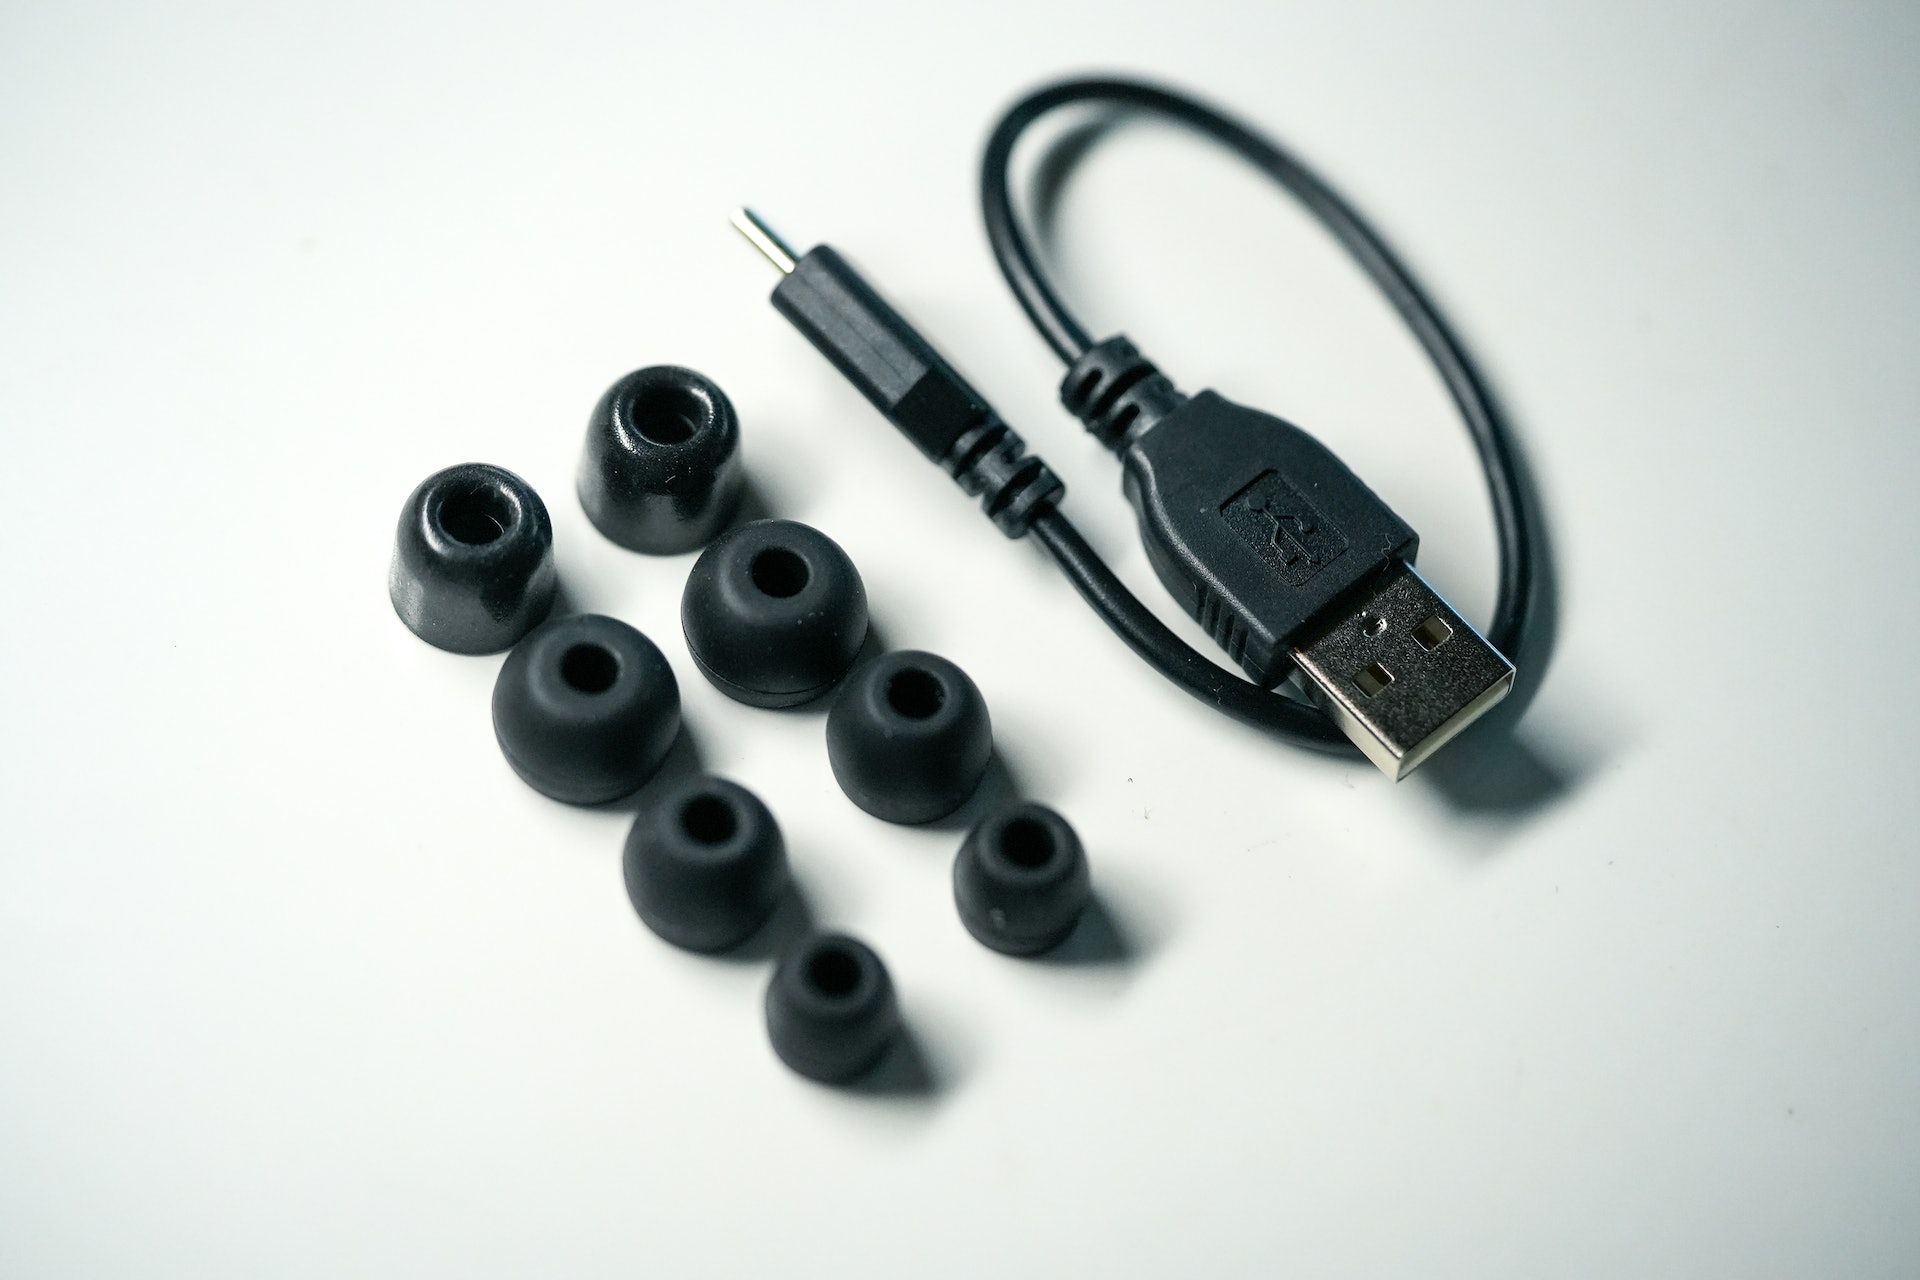 隨盒附送 USB Type-C 充電線、3 對不同尺碼的耳機、2 對特製記憶耳綿。